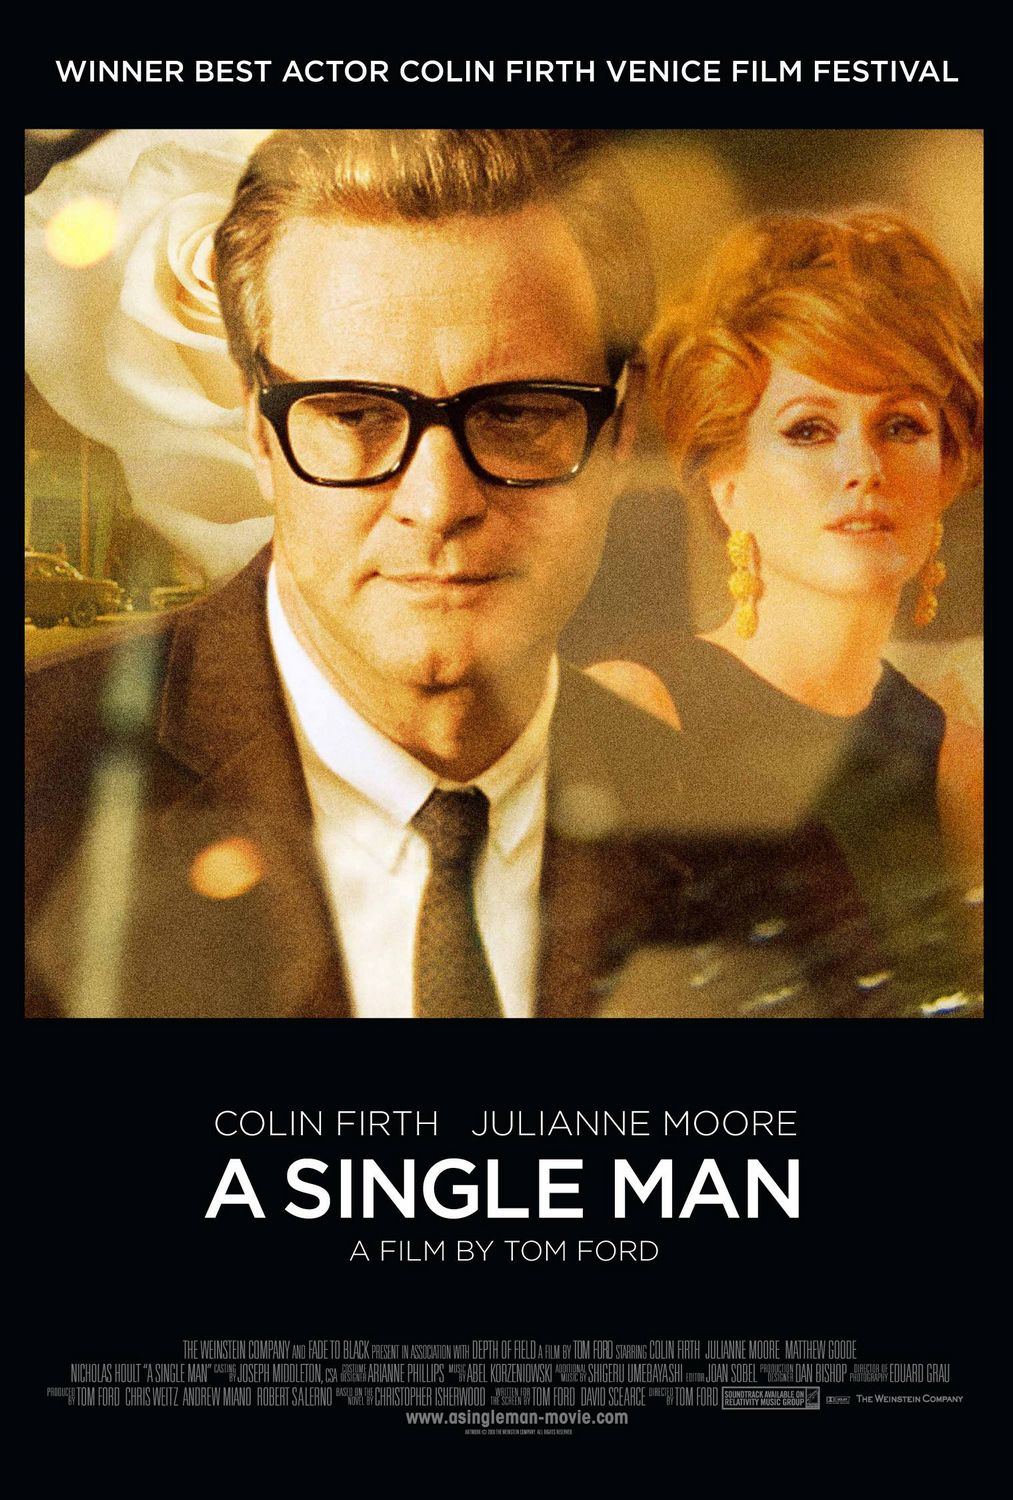 Постер - Одинокий мужчина: 1013x1500 / 299 Кб